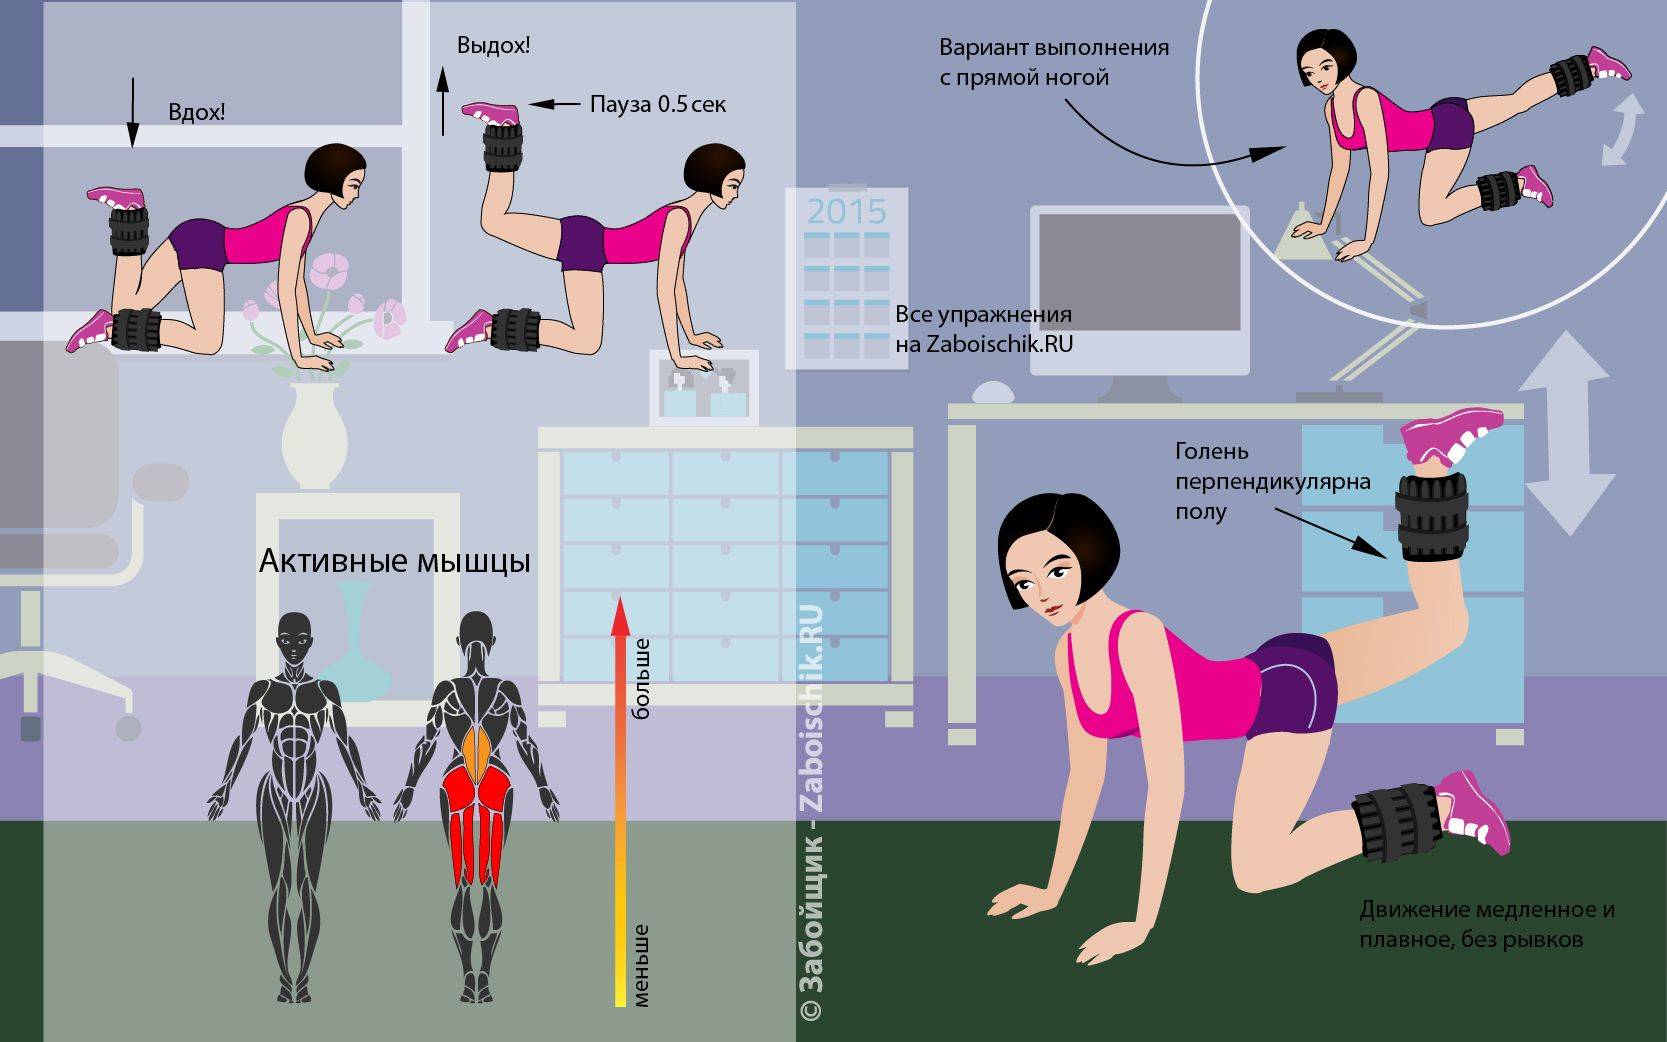 Упражнения для поддержания здоровья ваших ног и профилактики развития отеков нижних конечностей